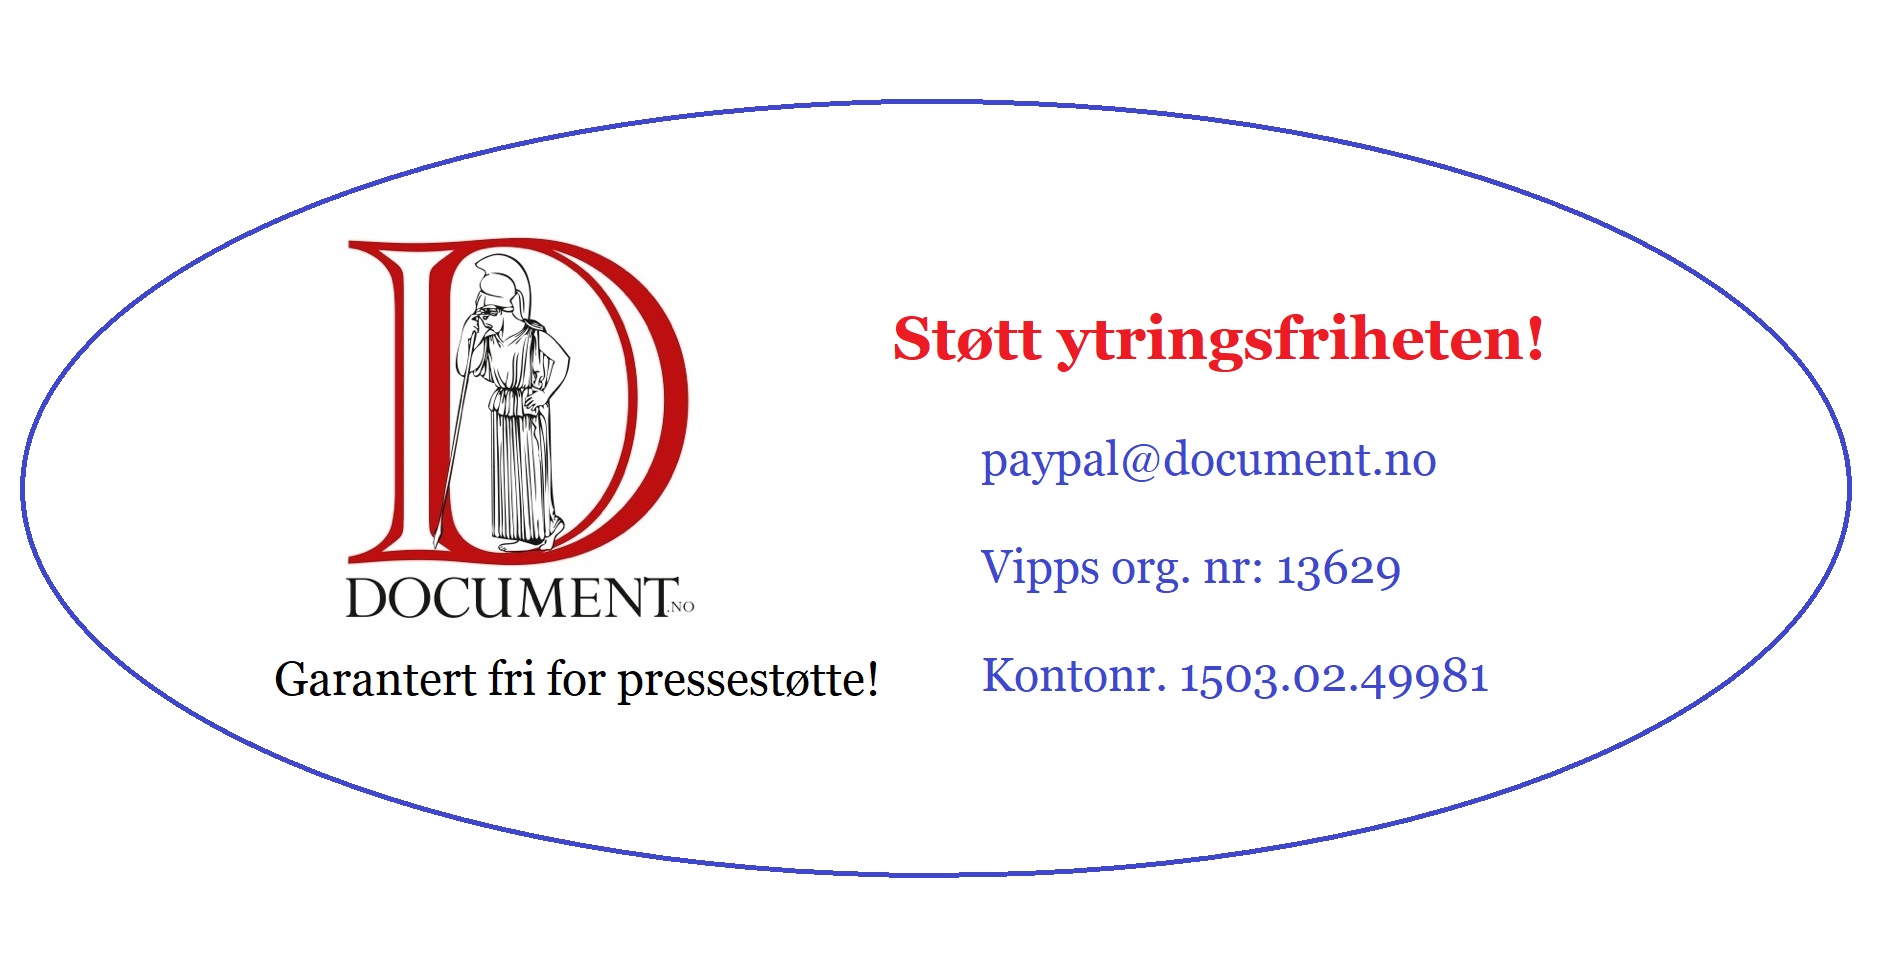 https://www.document.no/wp-content/uploads/2020/02/stott-ytringsfriheten.jpg